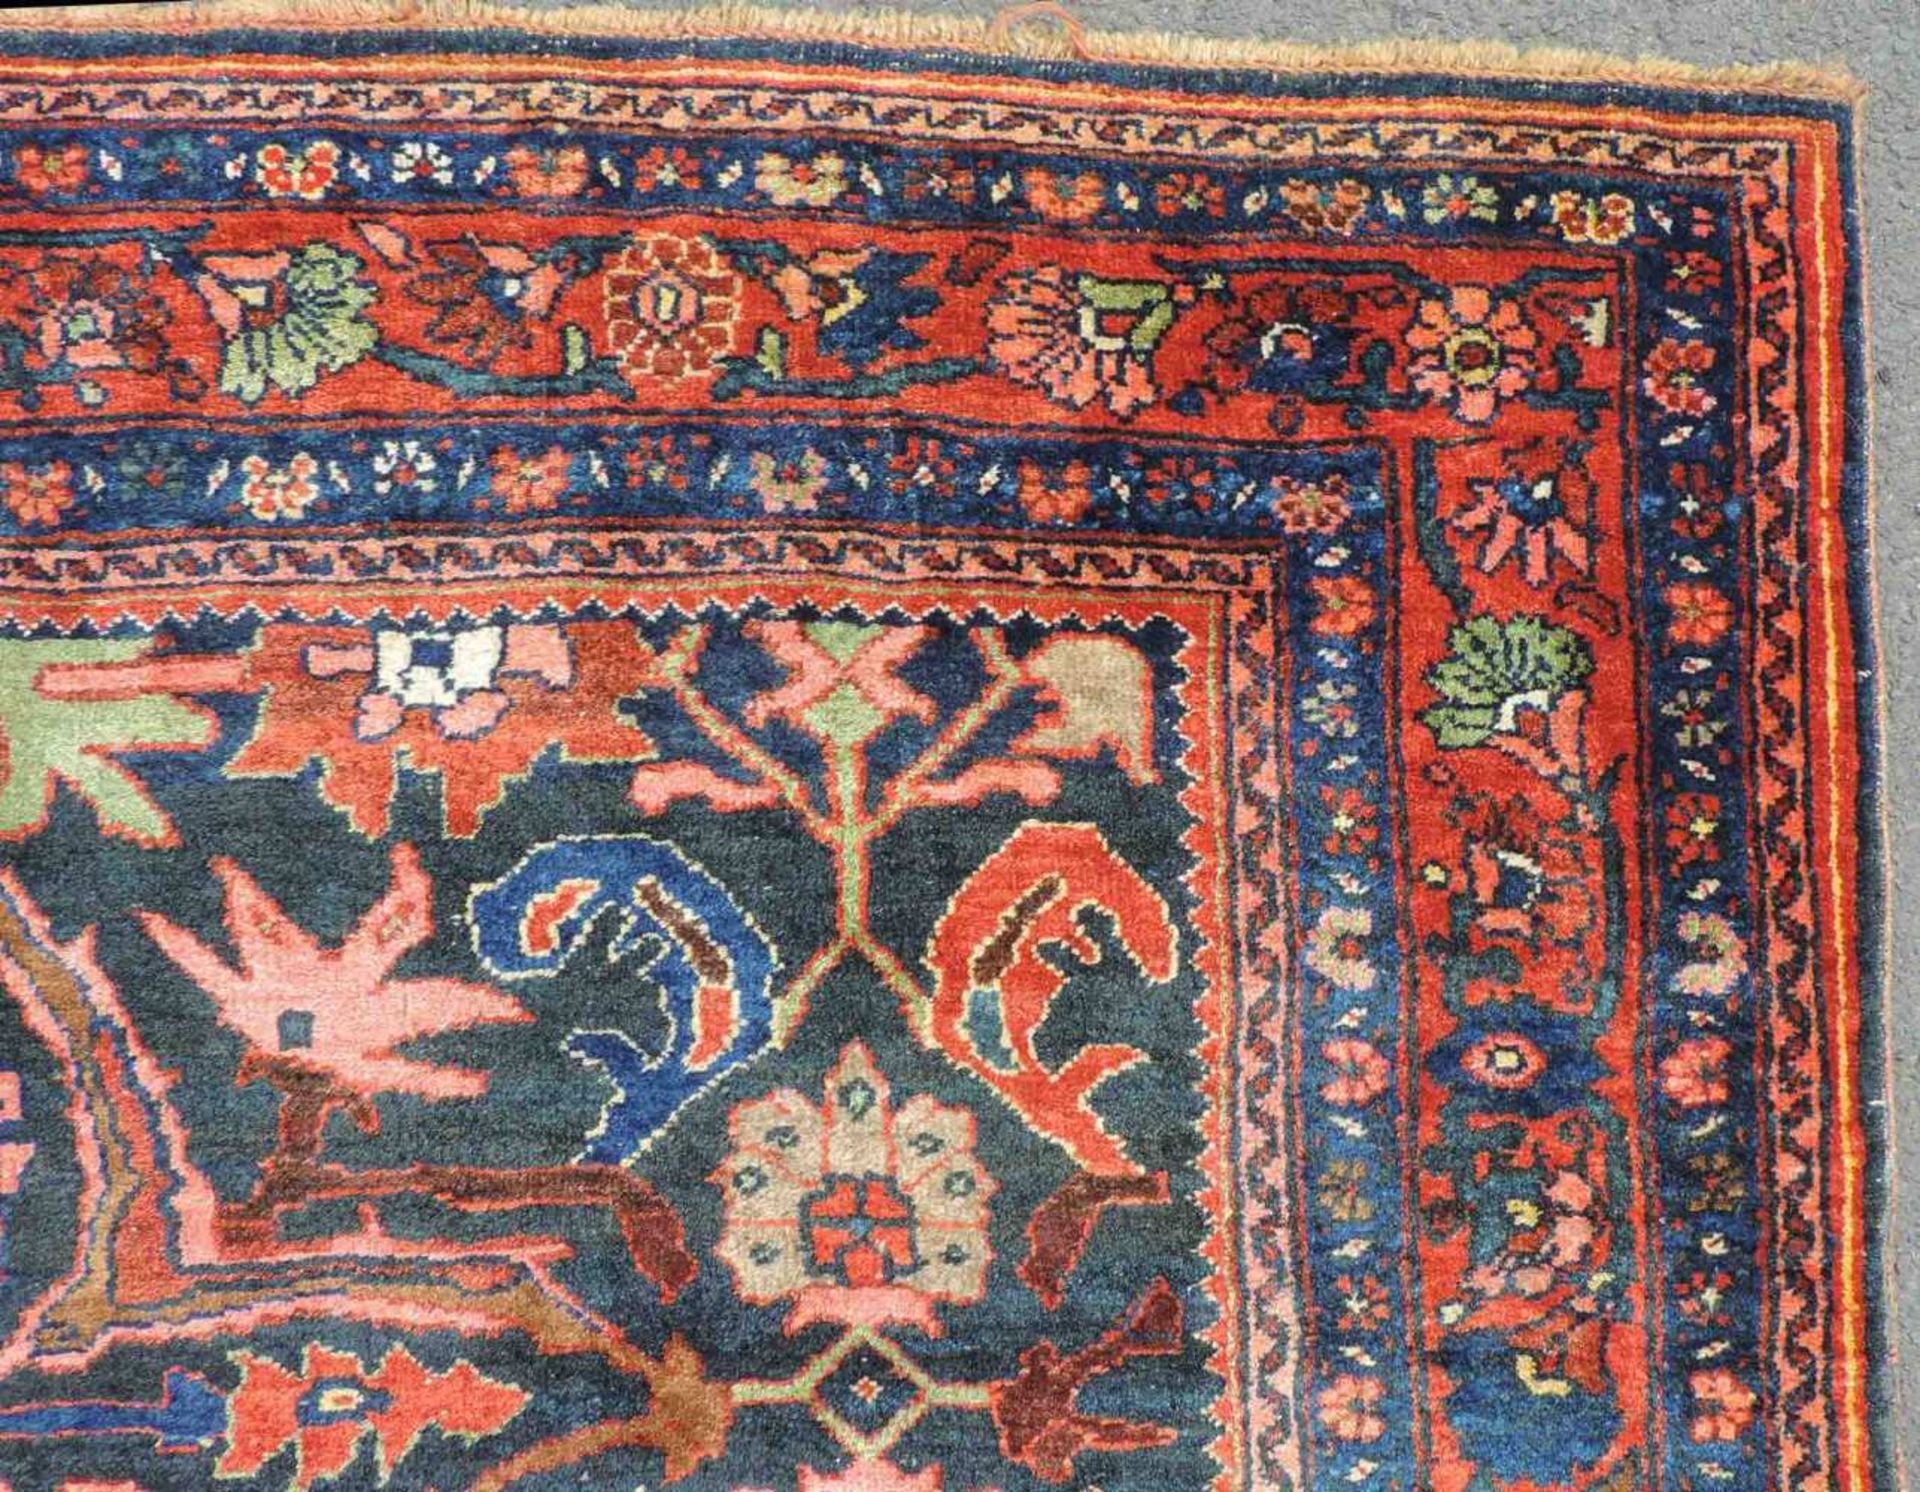 Bidjar Dorfteppich, Iran. Antik, um 1900. 214 cm x 160 cm. Handgeknüpft in Persien. Noch Wolle auf - Image 6 of 11